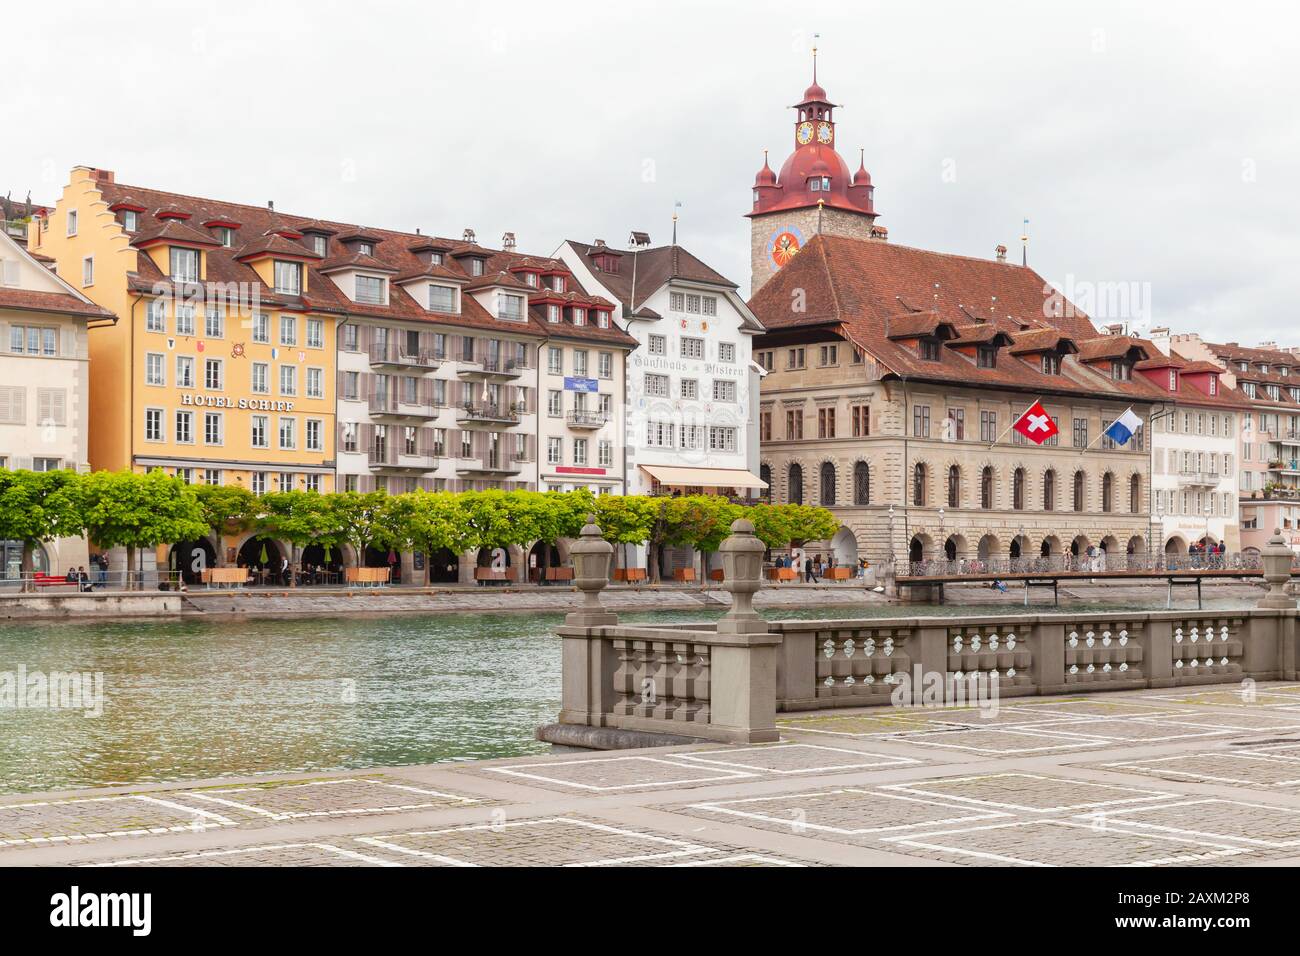 Lucerna, Svizzera - 7 maggio 2017: Paesaggio urbano costiero con torre dell'orologio del vecchio municipio sullo sfondo. La gente comune cammina per la strada Foto Stock